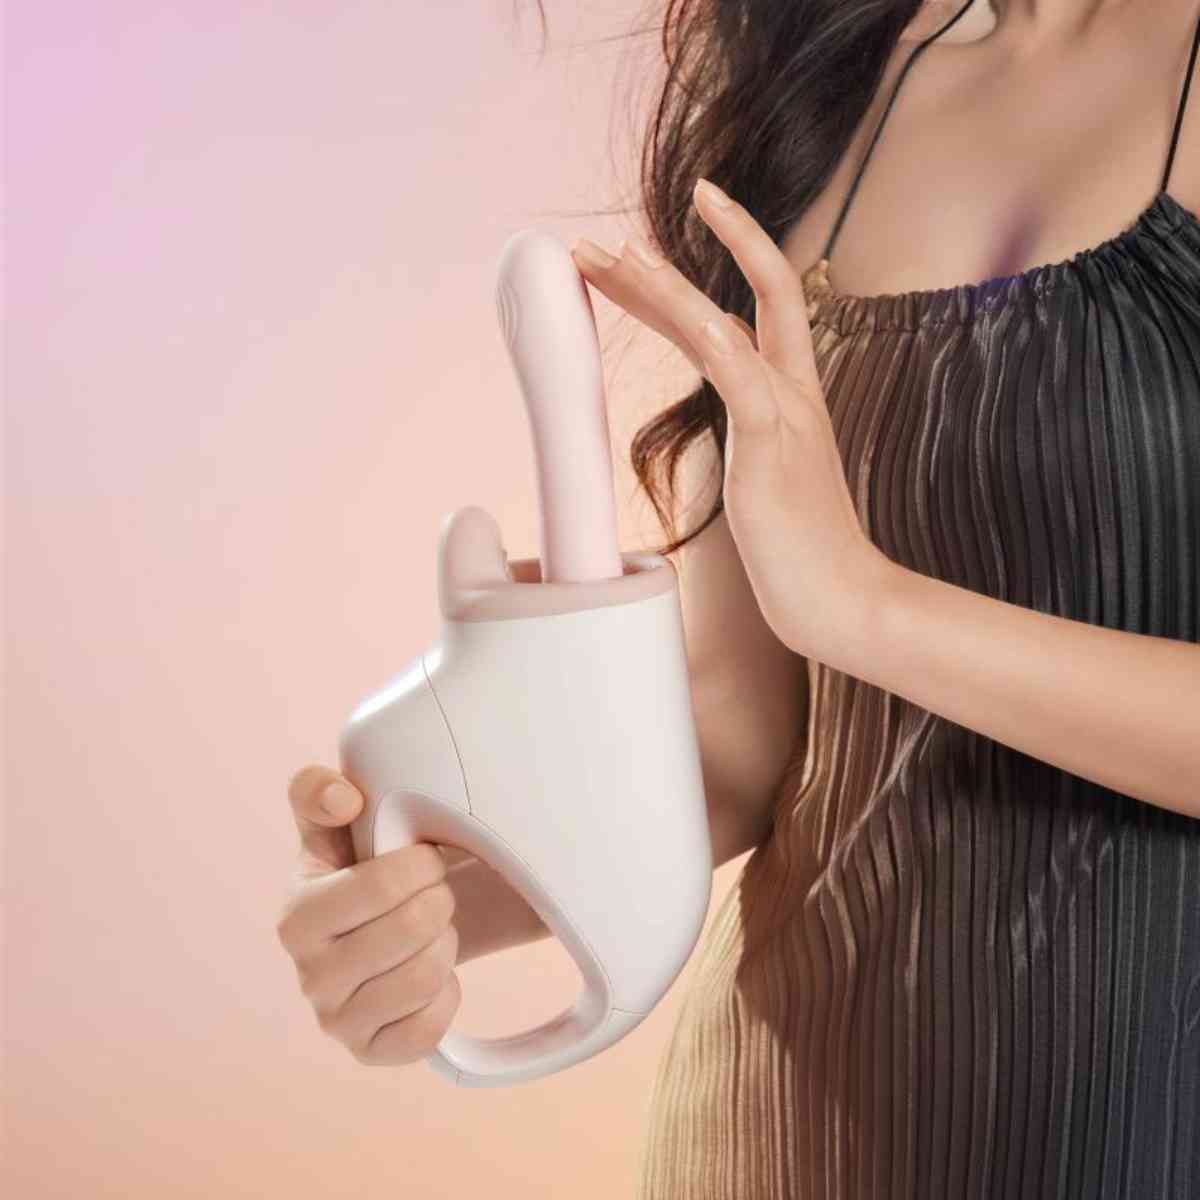 Automatische Hand-Sexmaschine "AK G1" in Frauenhand